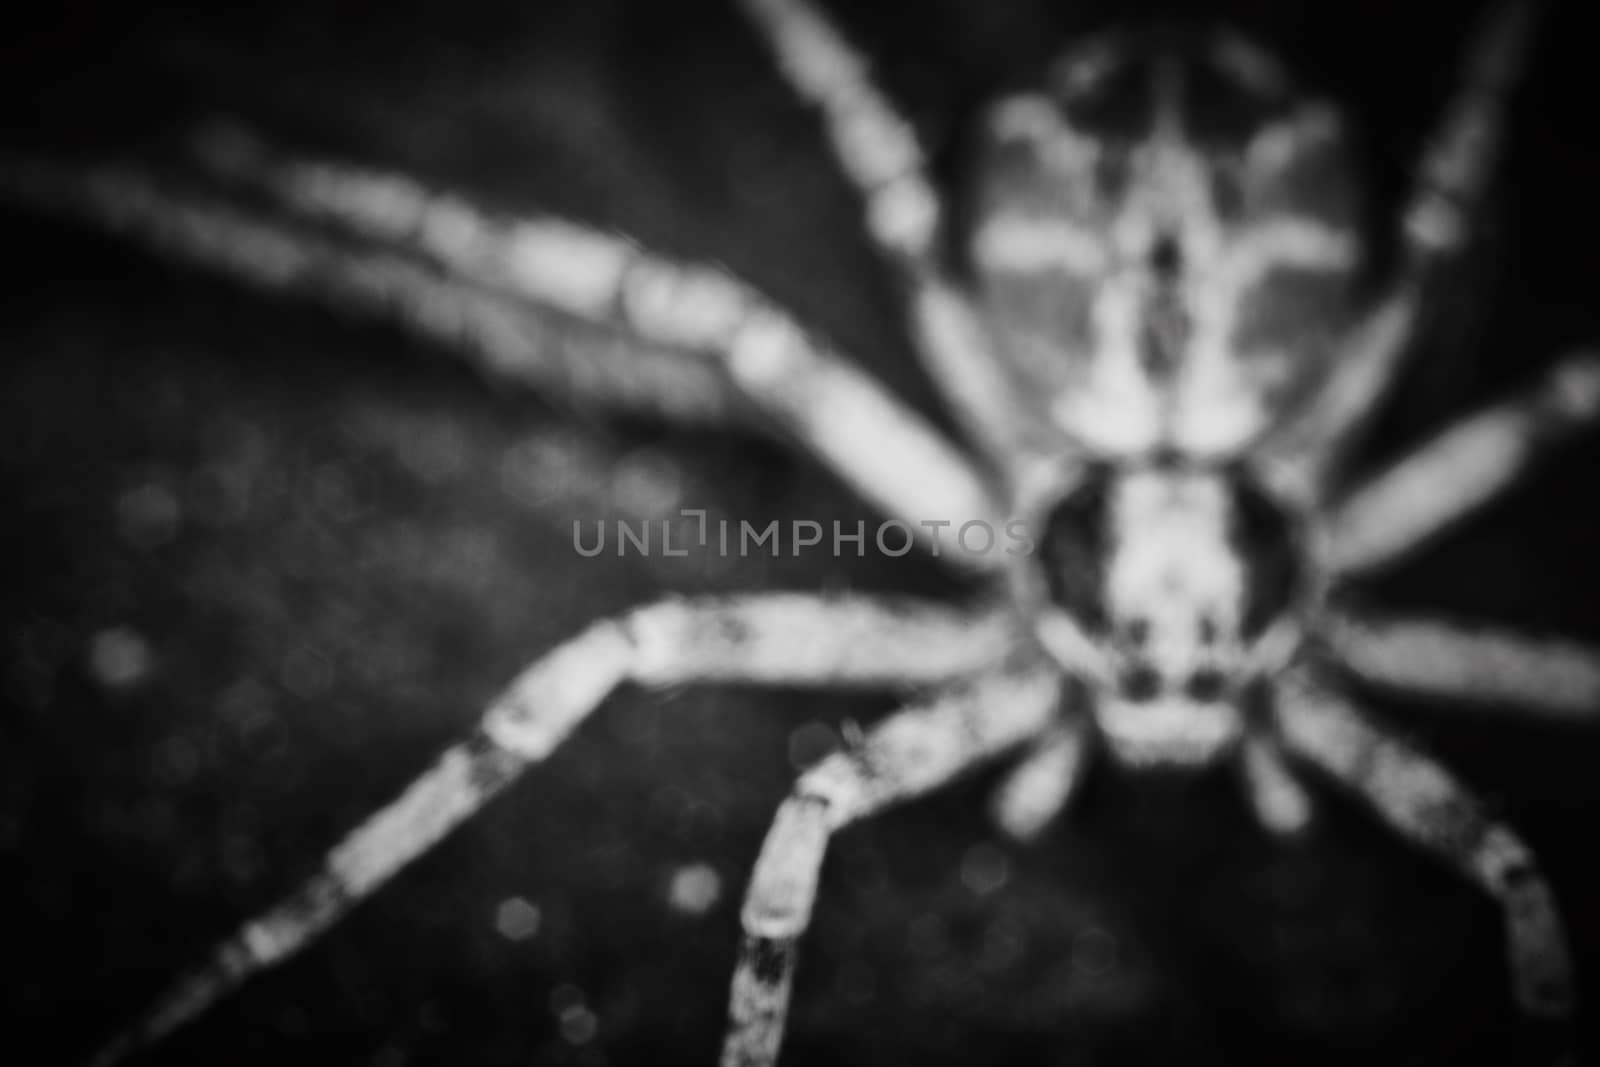 Philodromidae spider horror style extreme macro photo by rasika108